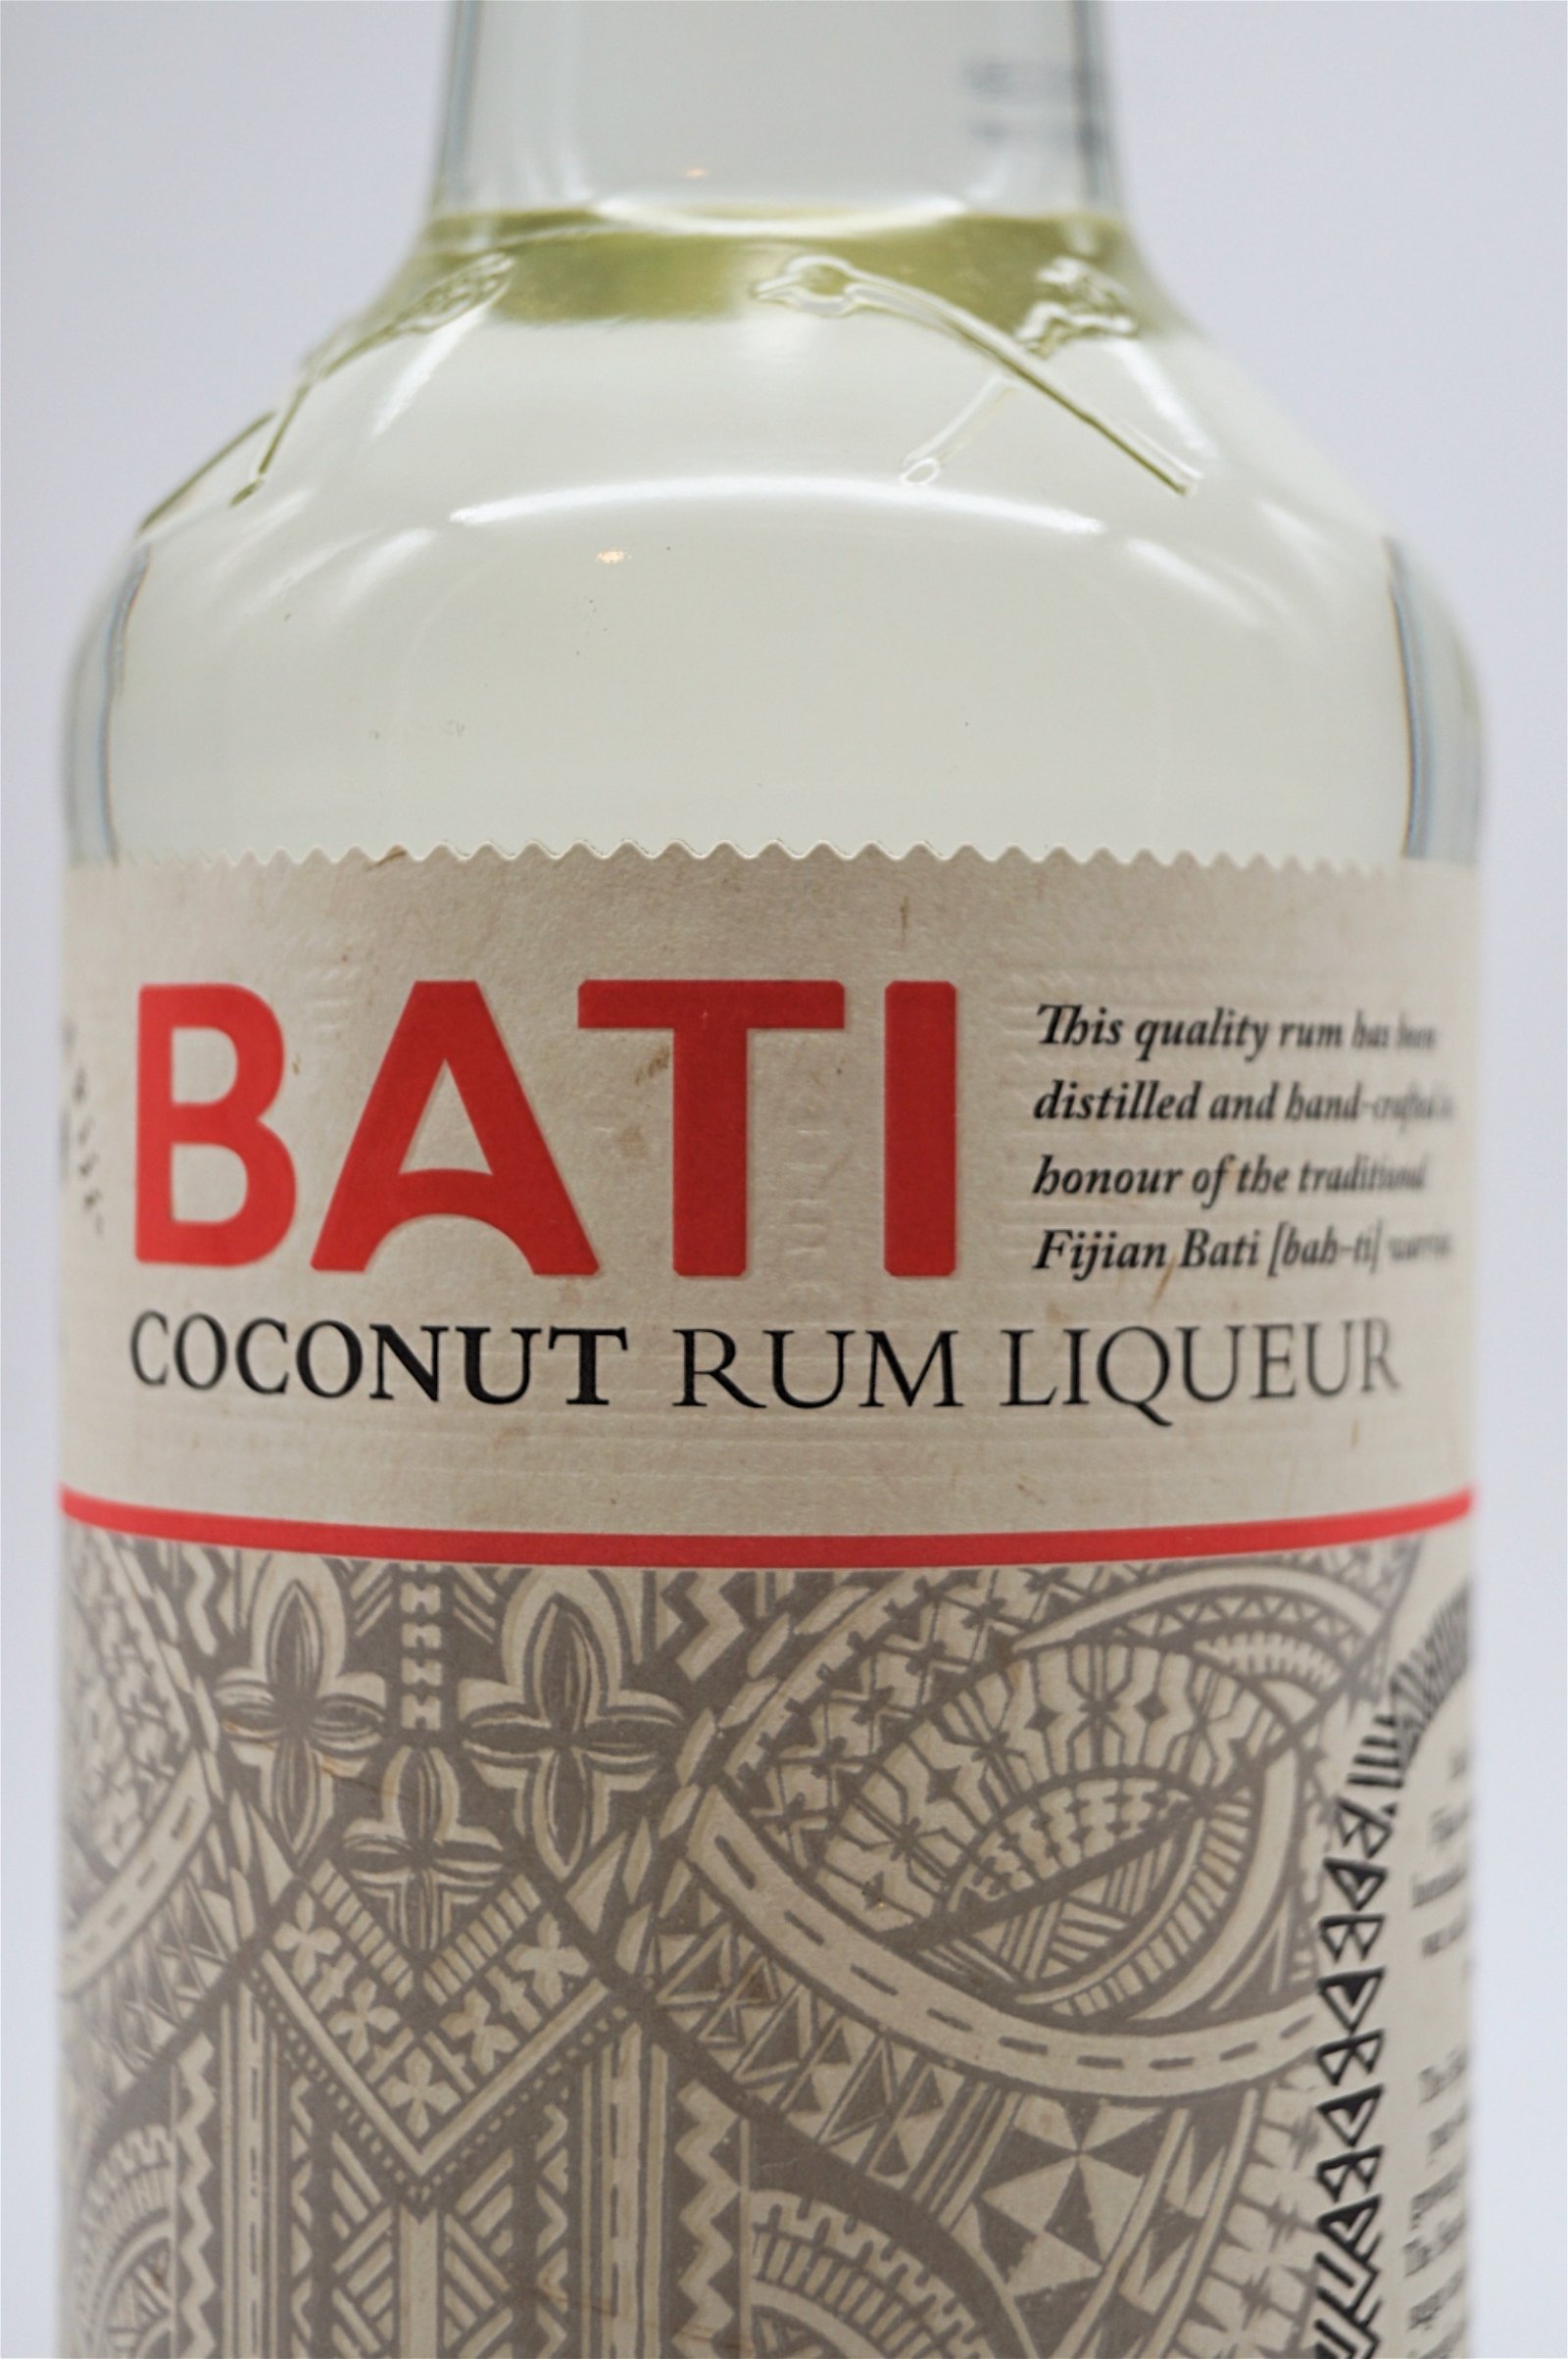 Bati Coconut Rum Liqueur